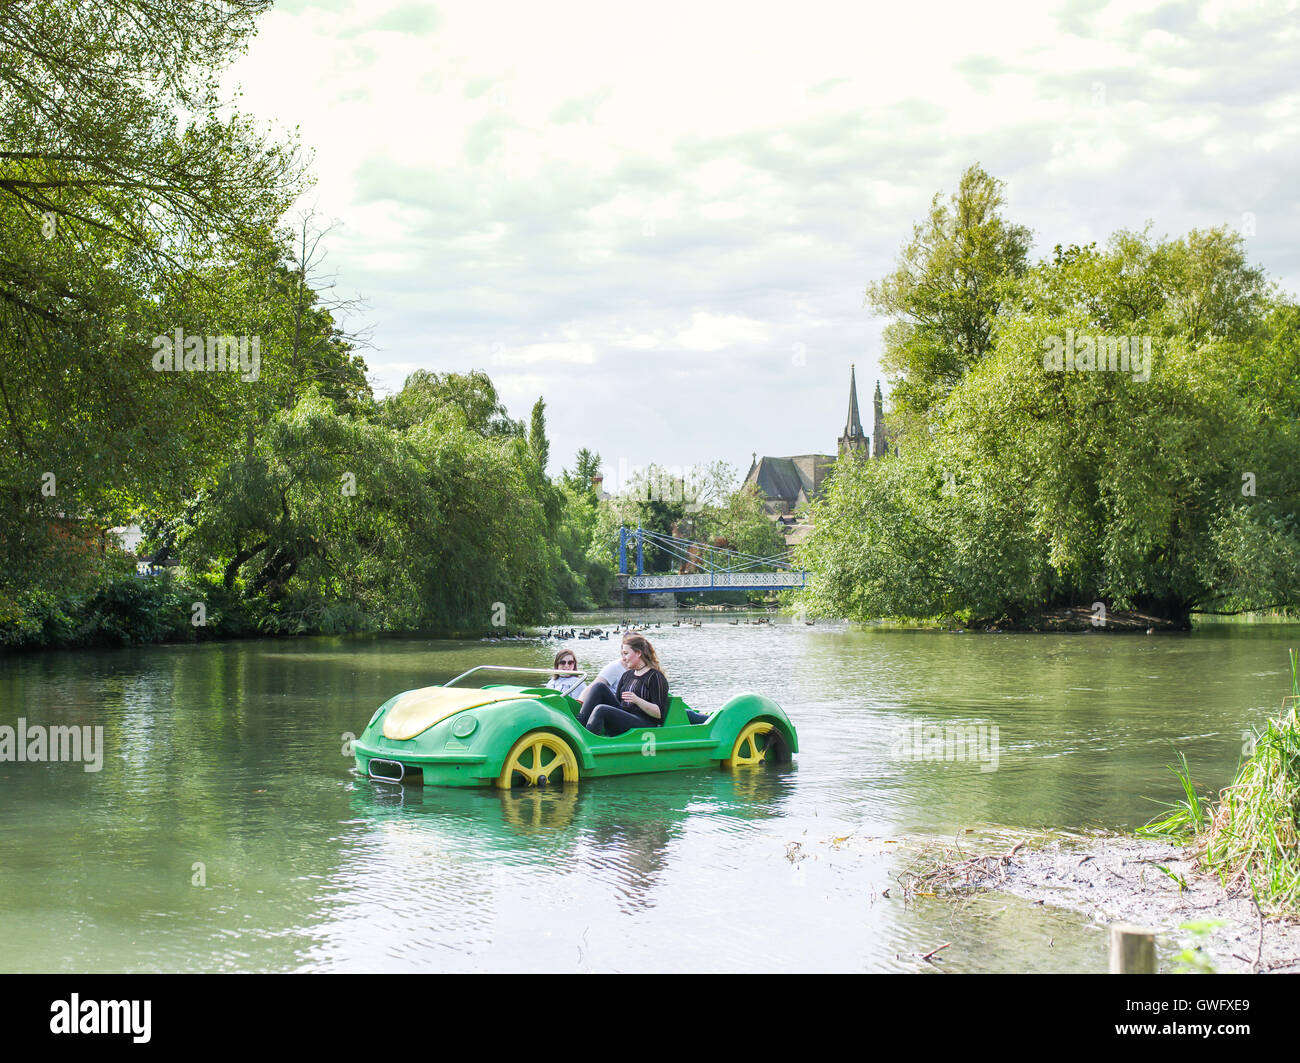 Leamington Spa, Warwickshire, Royaume-Uni. 13 septembre 2016. Pour faire du pédalo dans la forme d'une voiture sur la rivière Leam. Les températures ont été très élevés pour la période de l'année. Crédit : Jamie Gray/Alamy Live News Banque D'Images